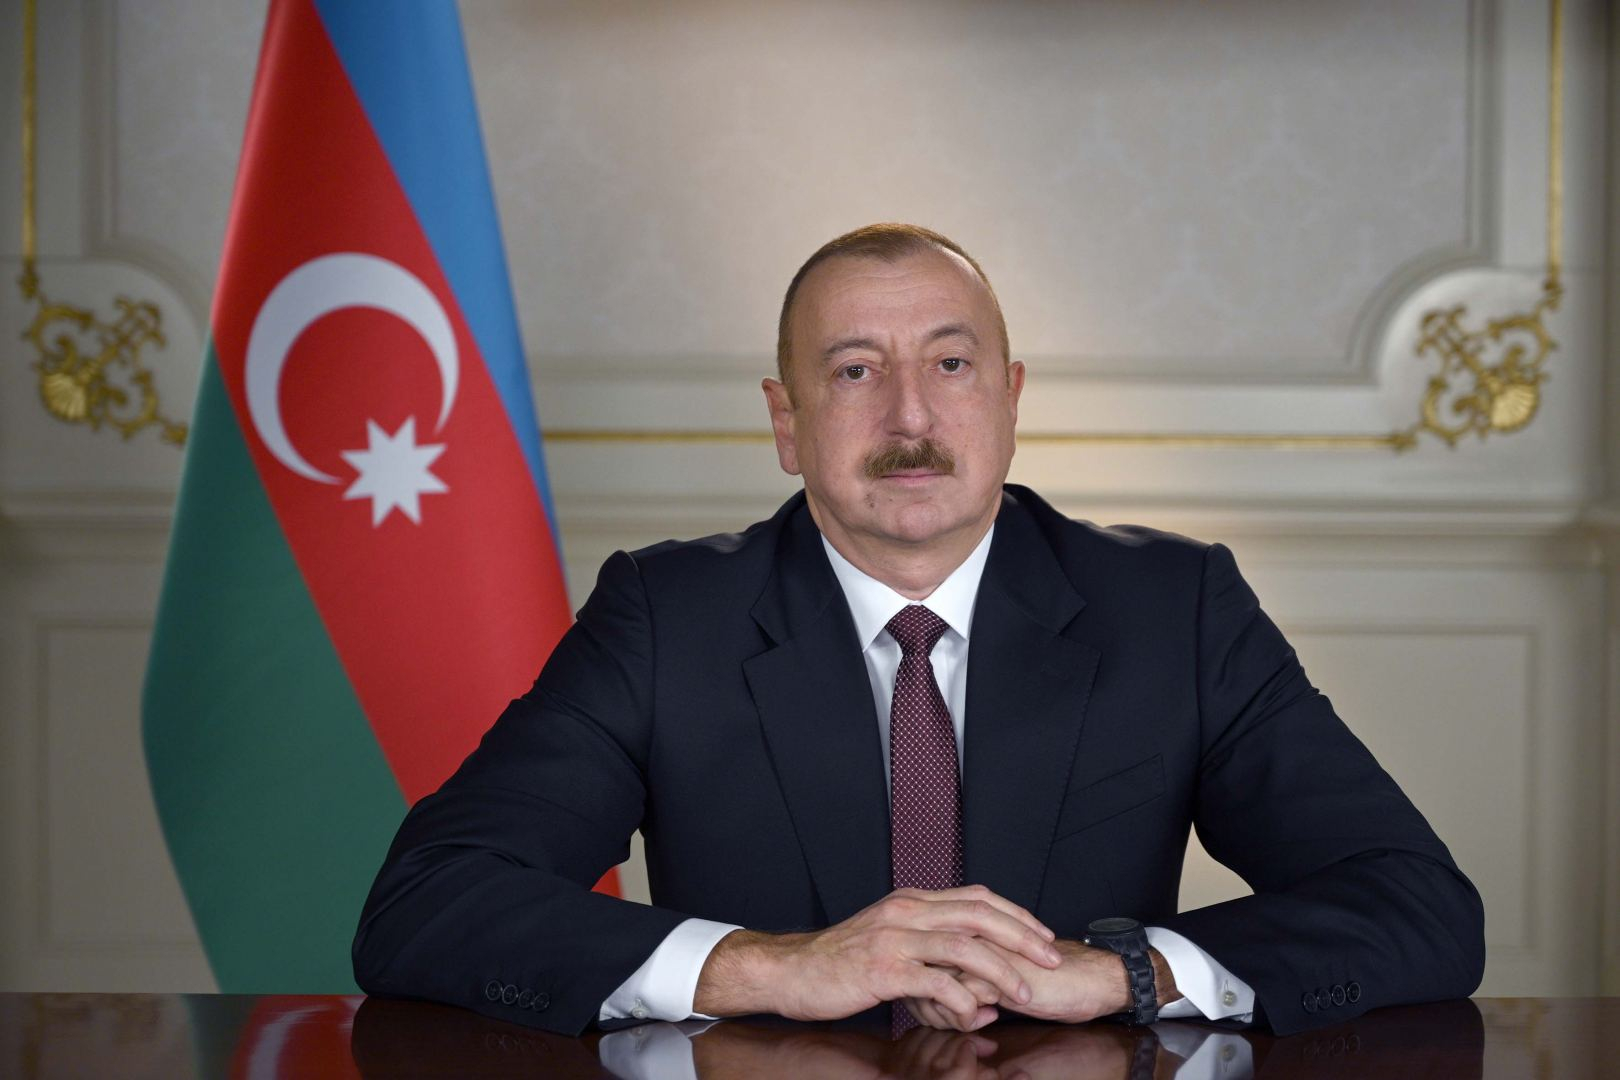 Ильхам Алиев выступил на 75-й сессии Генеральной Ассамблеи ООН - ОБНОВЛЕНО